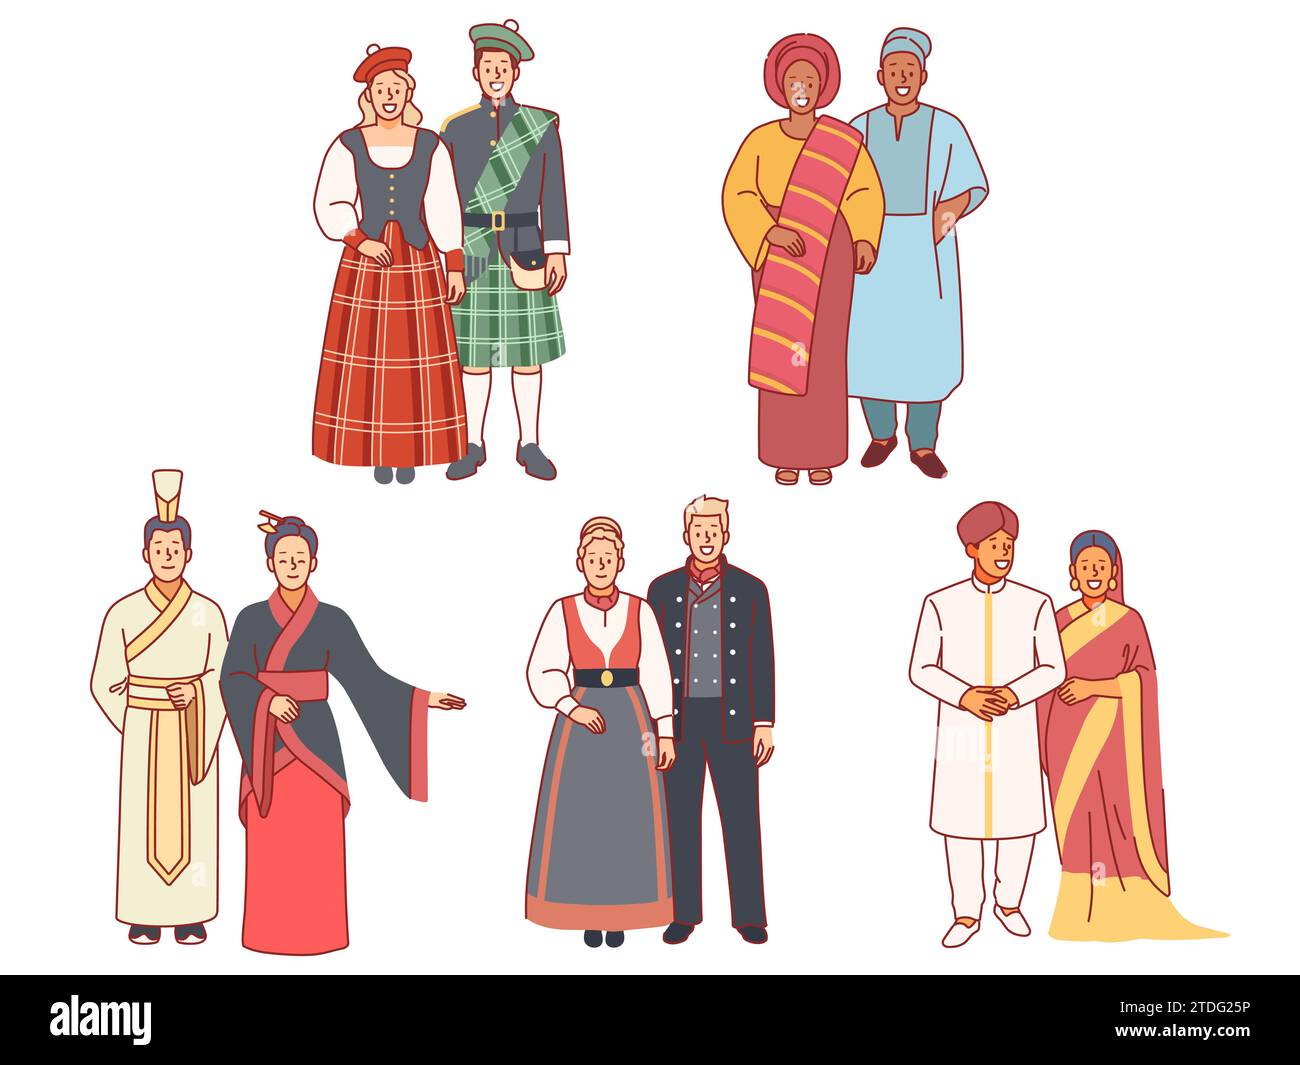 Menschen in Nationalkostümen. Multikulturelle Paare, traditionelle Volkskleidung, verschiedene ethnische Gruppen, asiaten, afrikaner und europäer. Schotten, Indianer und Stock Vektor